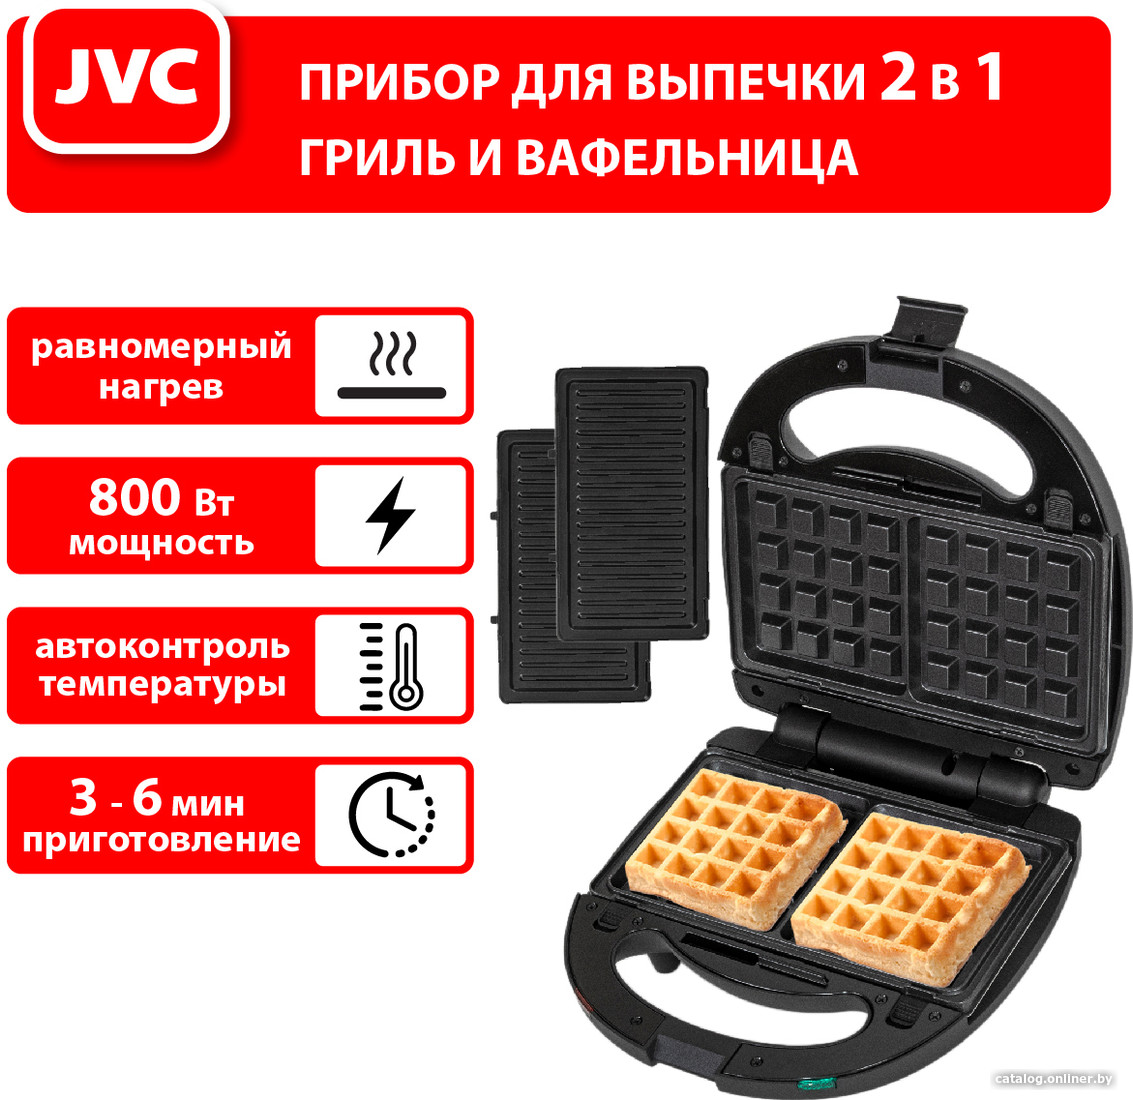 

Многофункциональная сэндвичница JVC JK-MB027